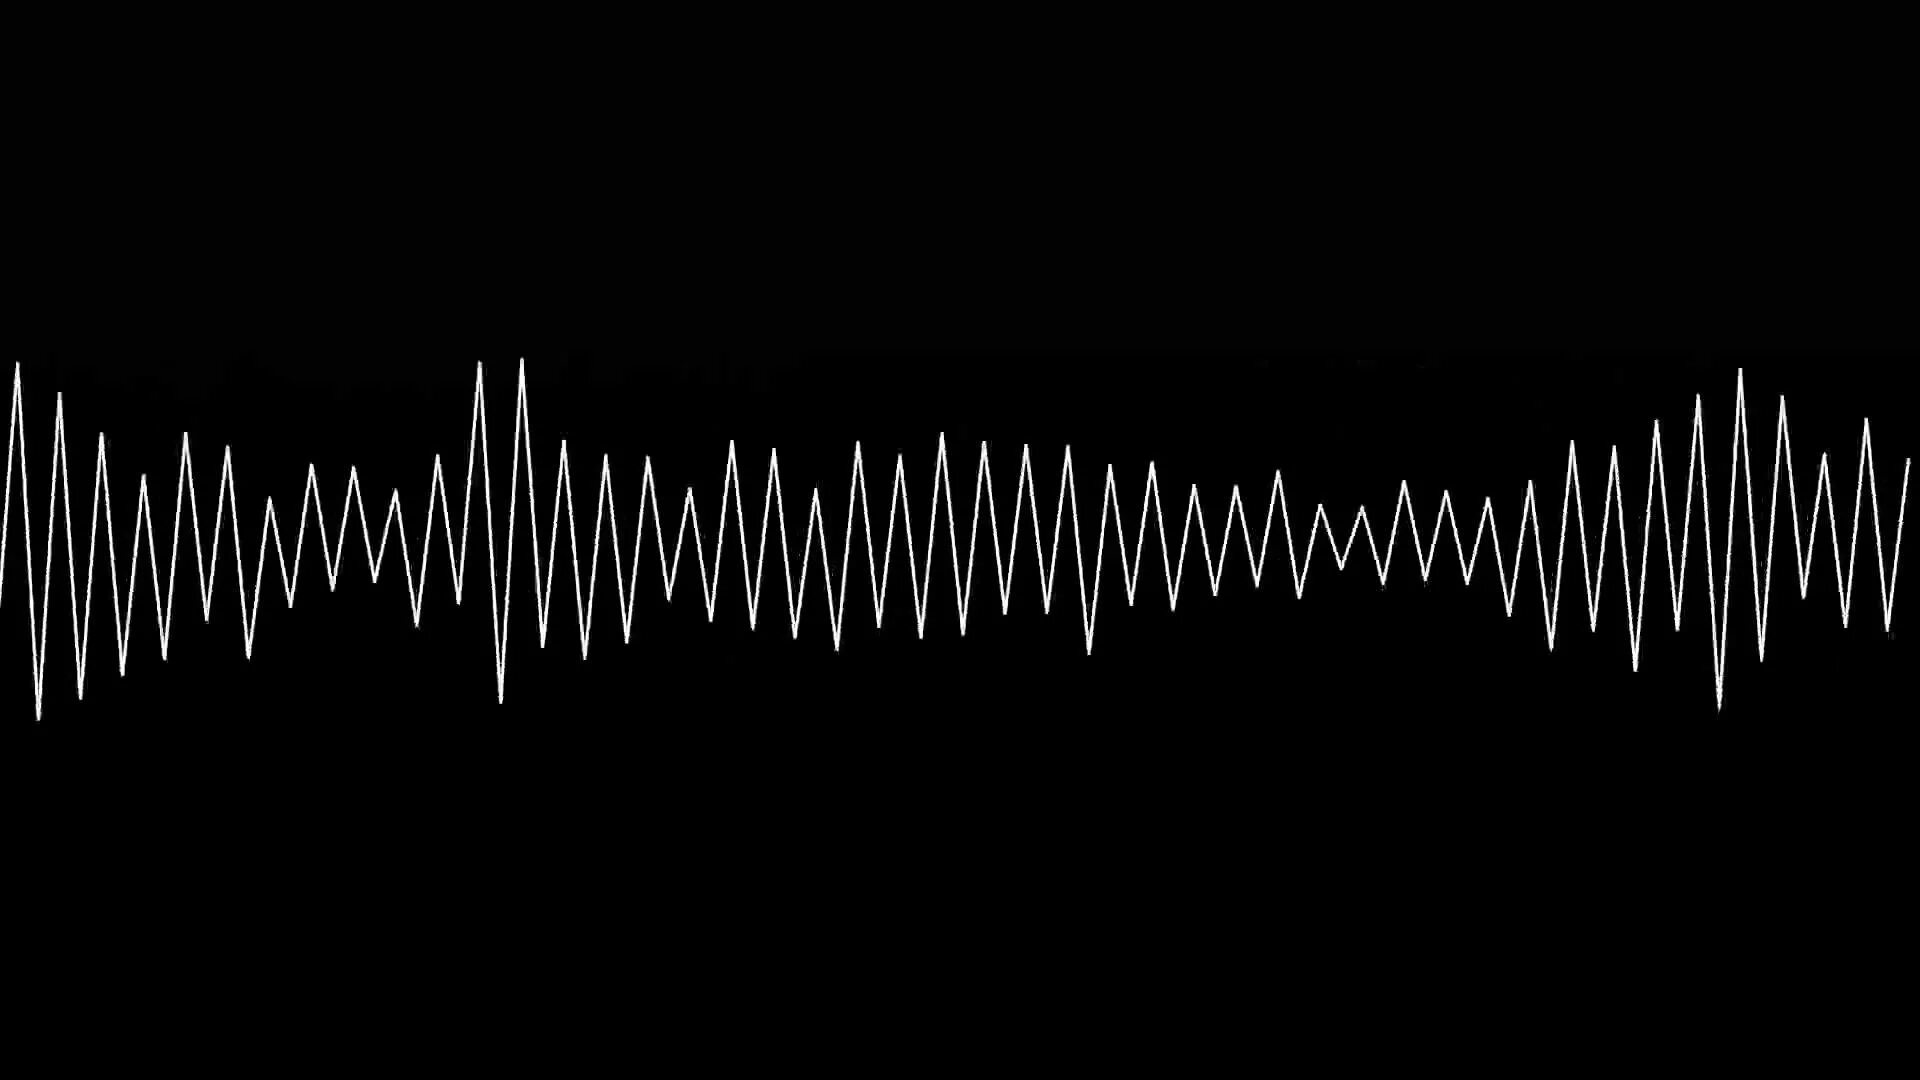 Gif sound. Звуковая волна. Звуковая дорожка. Звуковая волна на черном фоне. Звуковые волны фон.